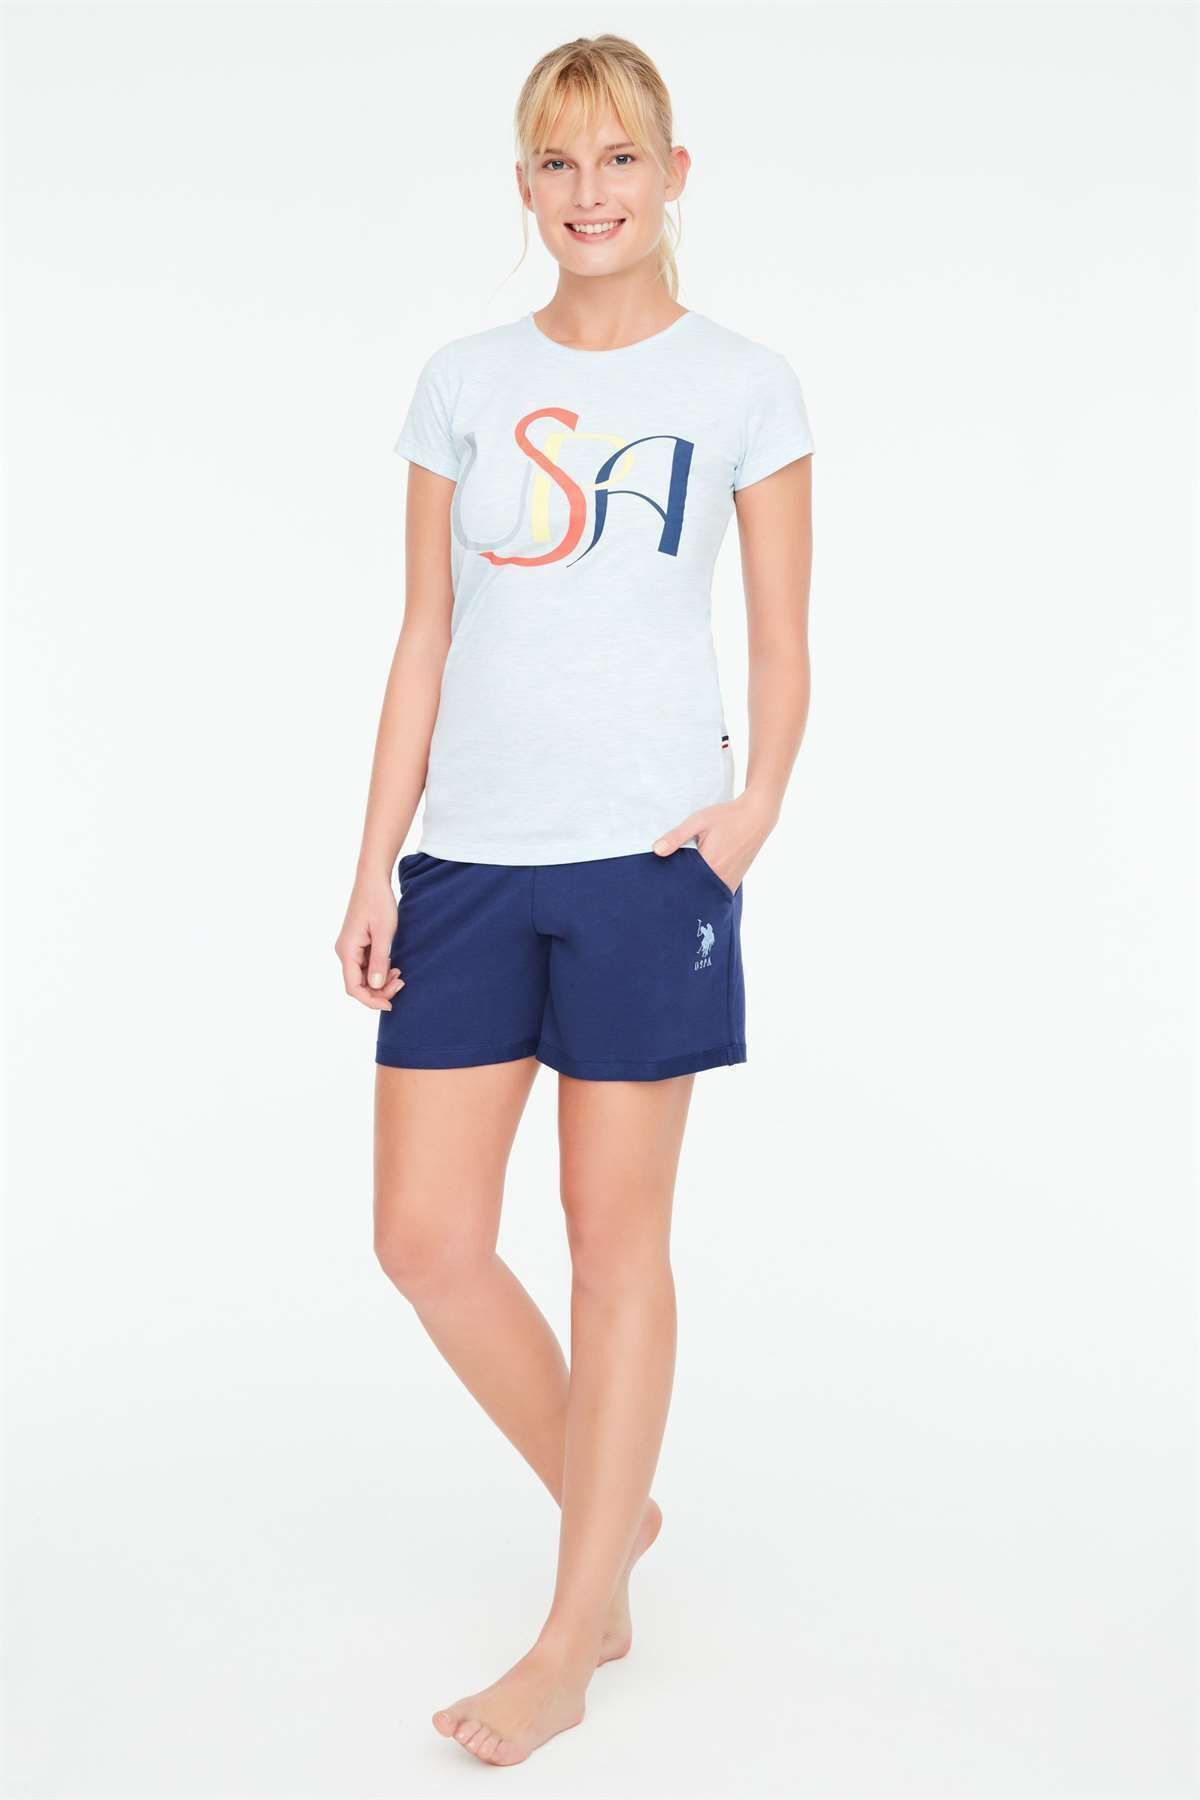 U.S. Polo Assn. - Kadın Mavi Melanj T-shirt Şort Takımı